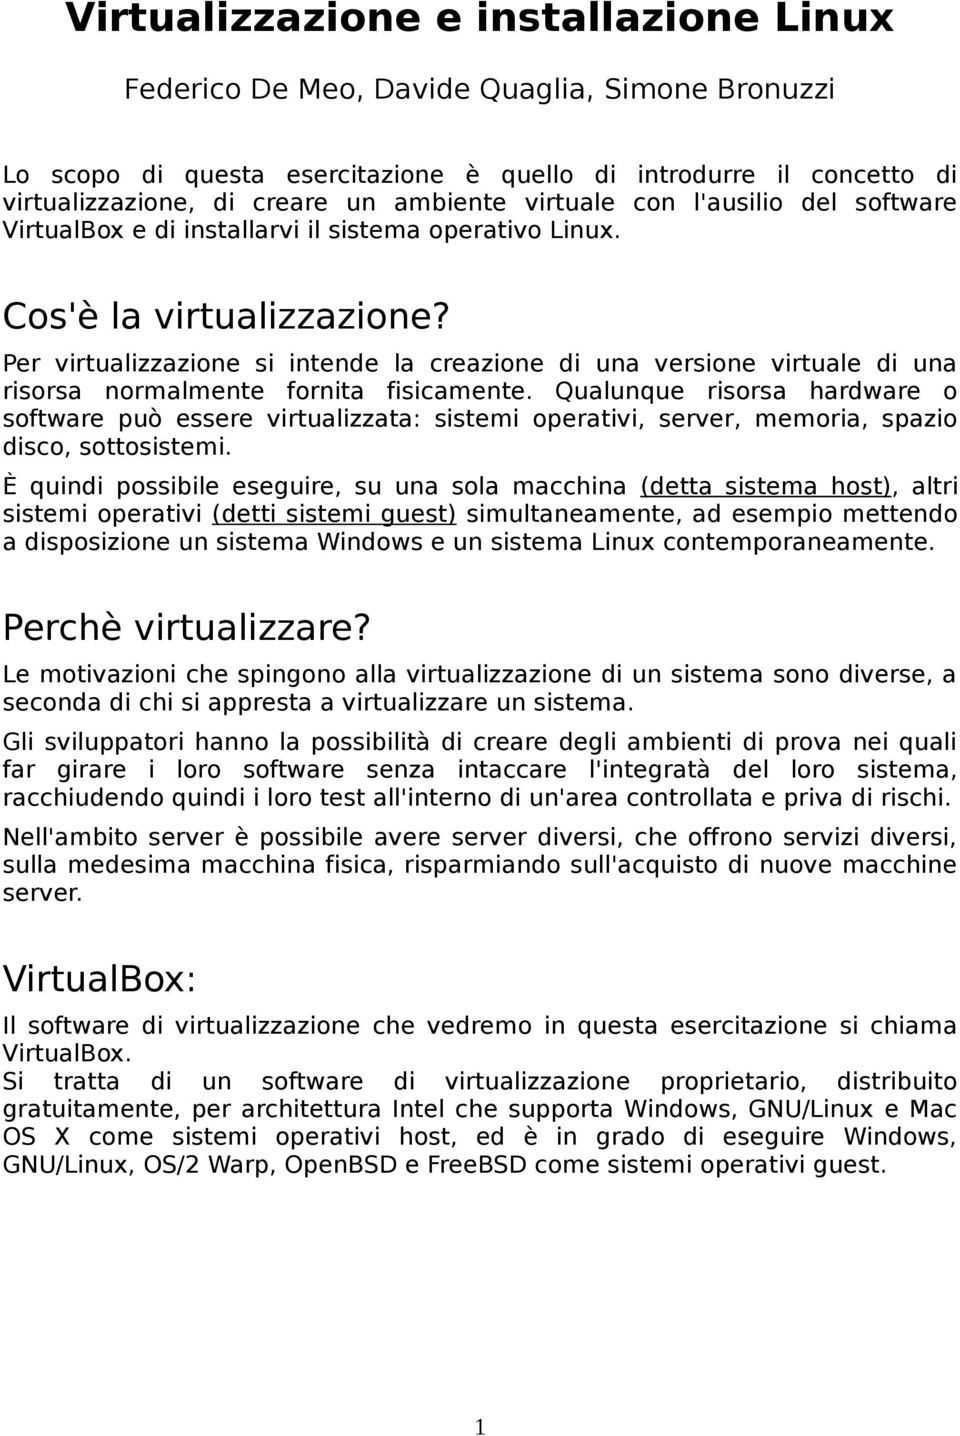 Per virtualizzazione si intende la creazione di una versione virtuale di una risorsa normalmente fornita fisicamente.